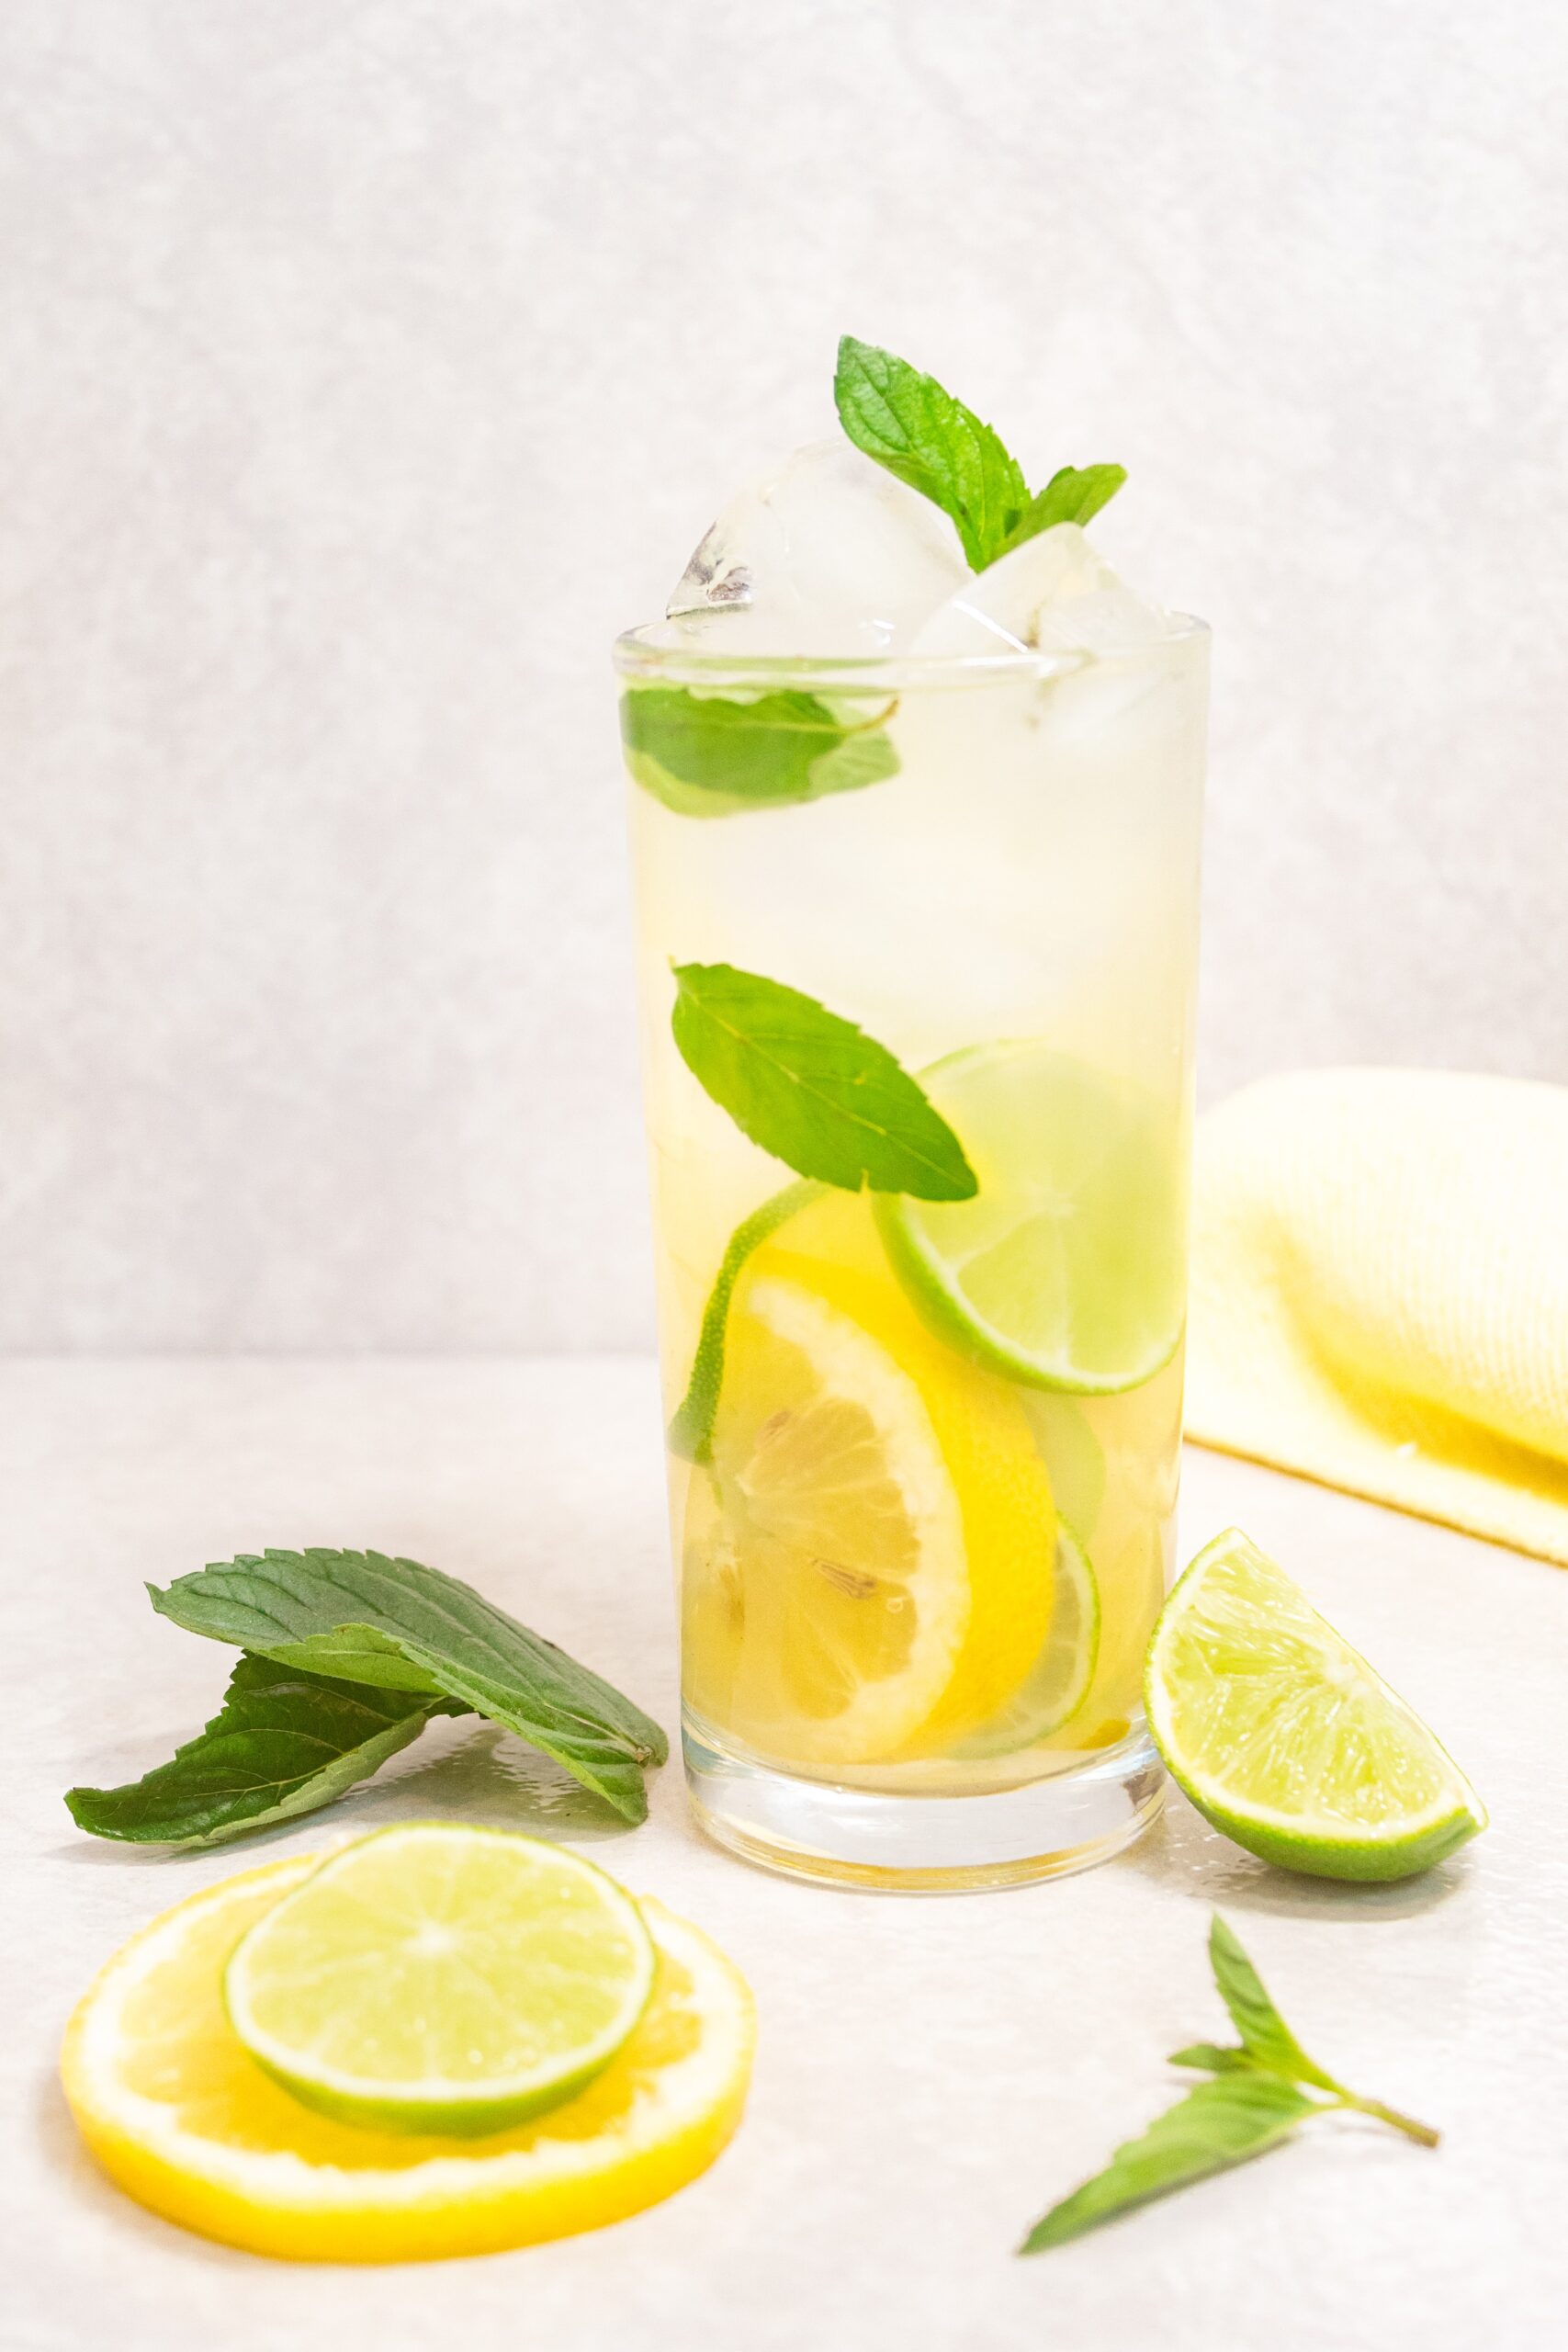 Substitute Lemon Juice for Lemon Zest 